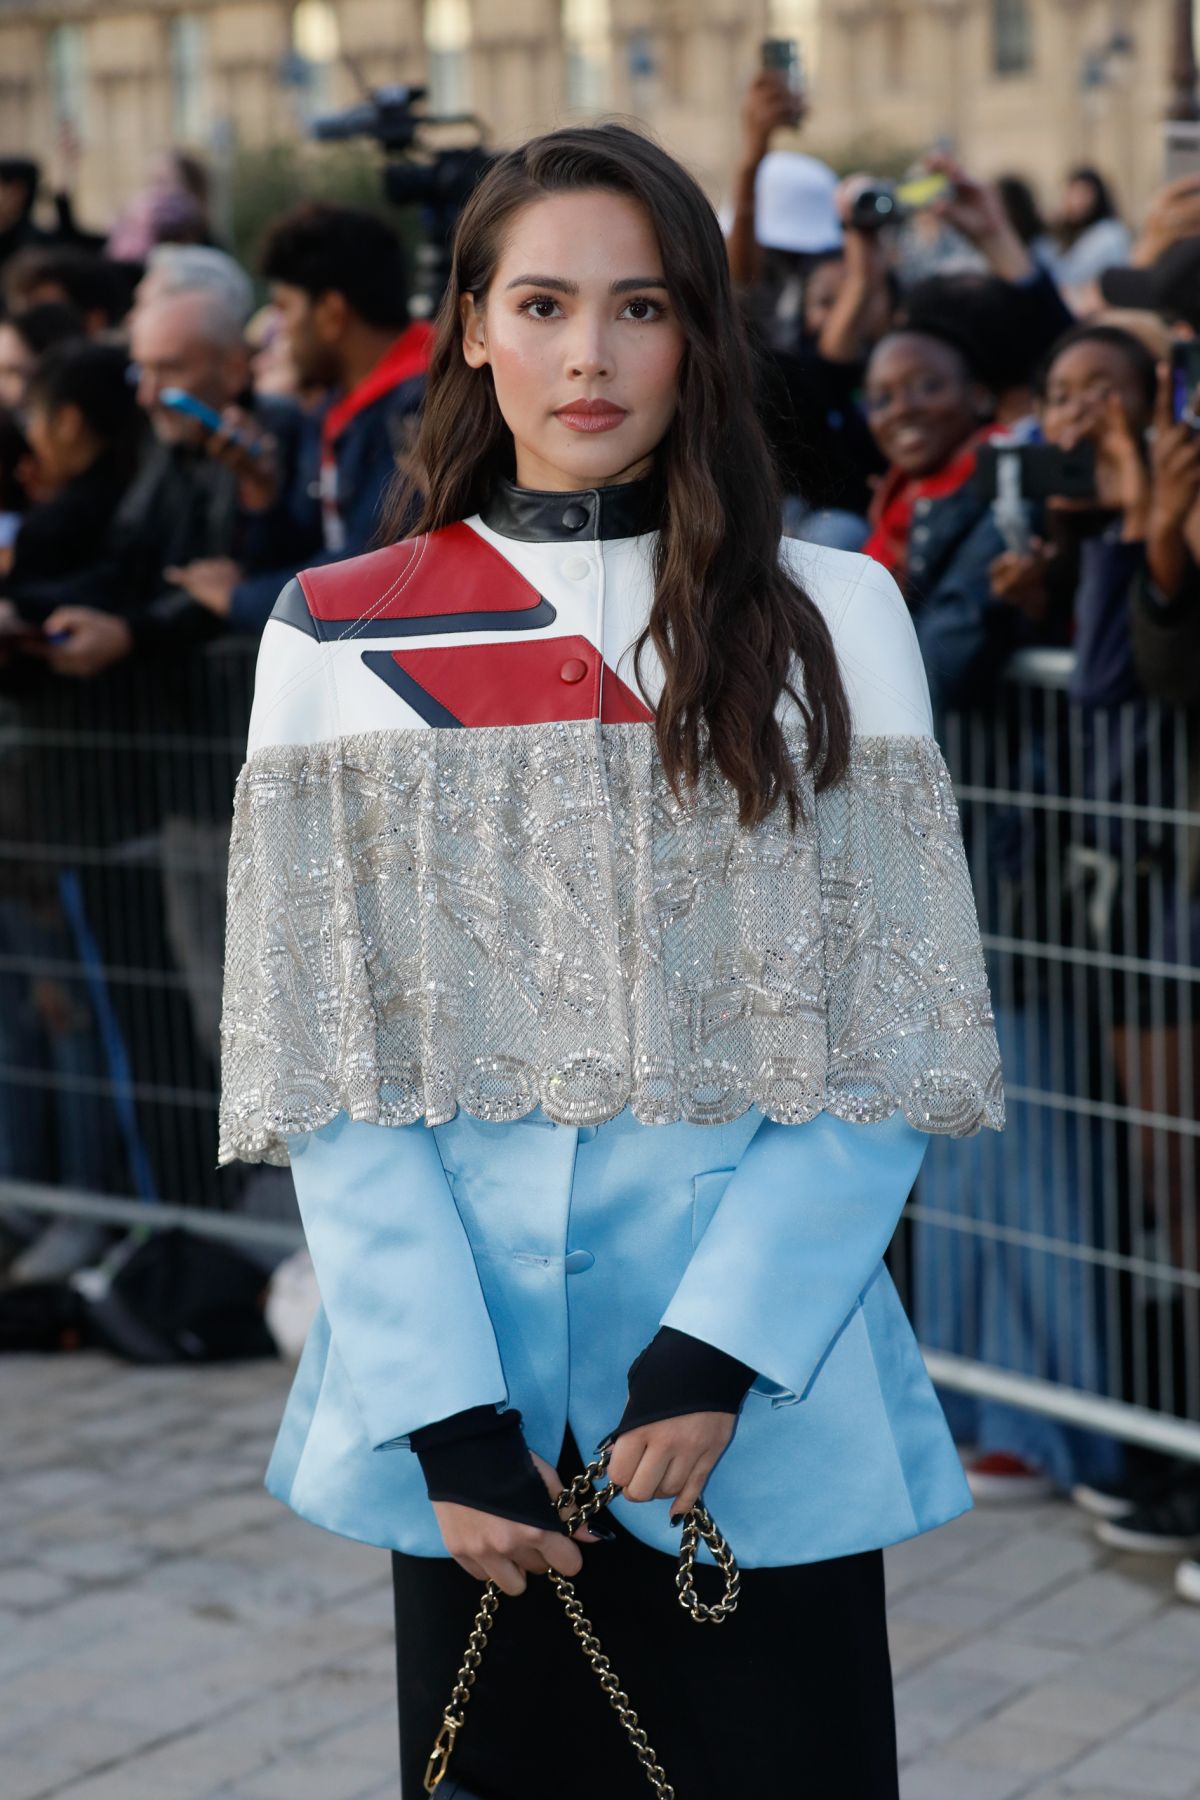 URASSAYA SPERBUND at Louis Vuitton Fashion Show in Paris 10/01/2019 – HawtCelebs